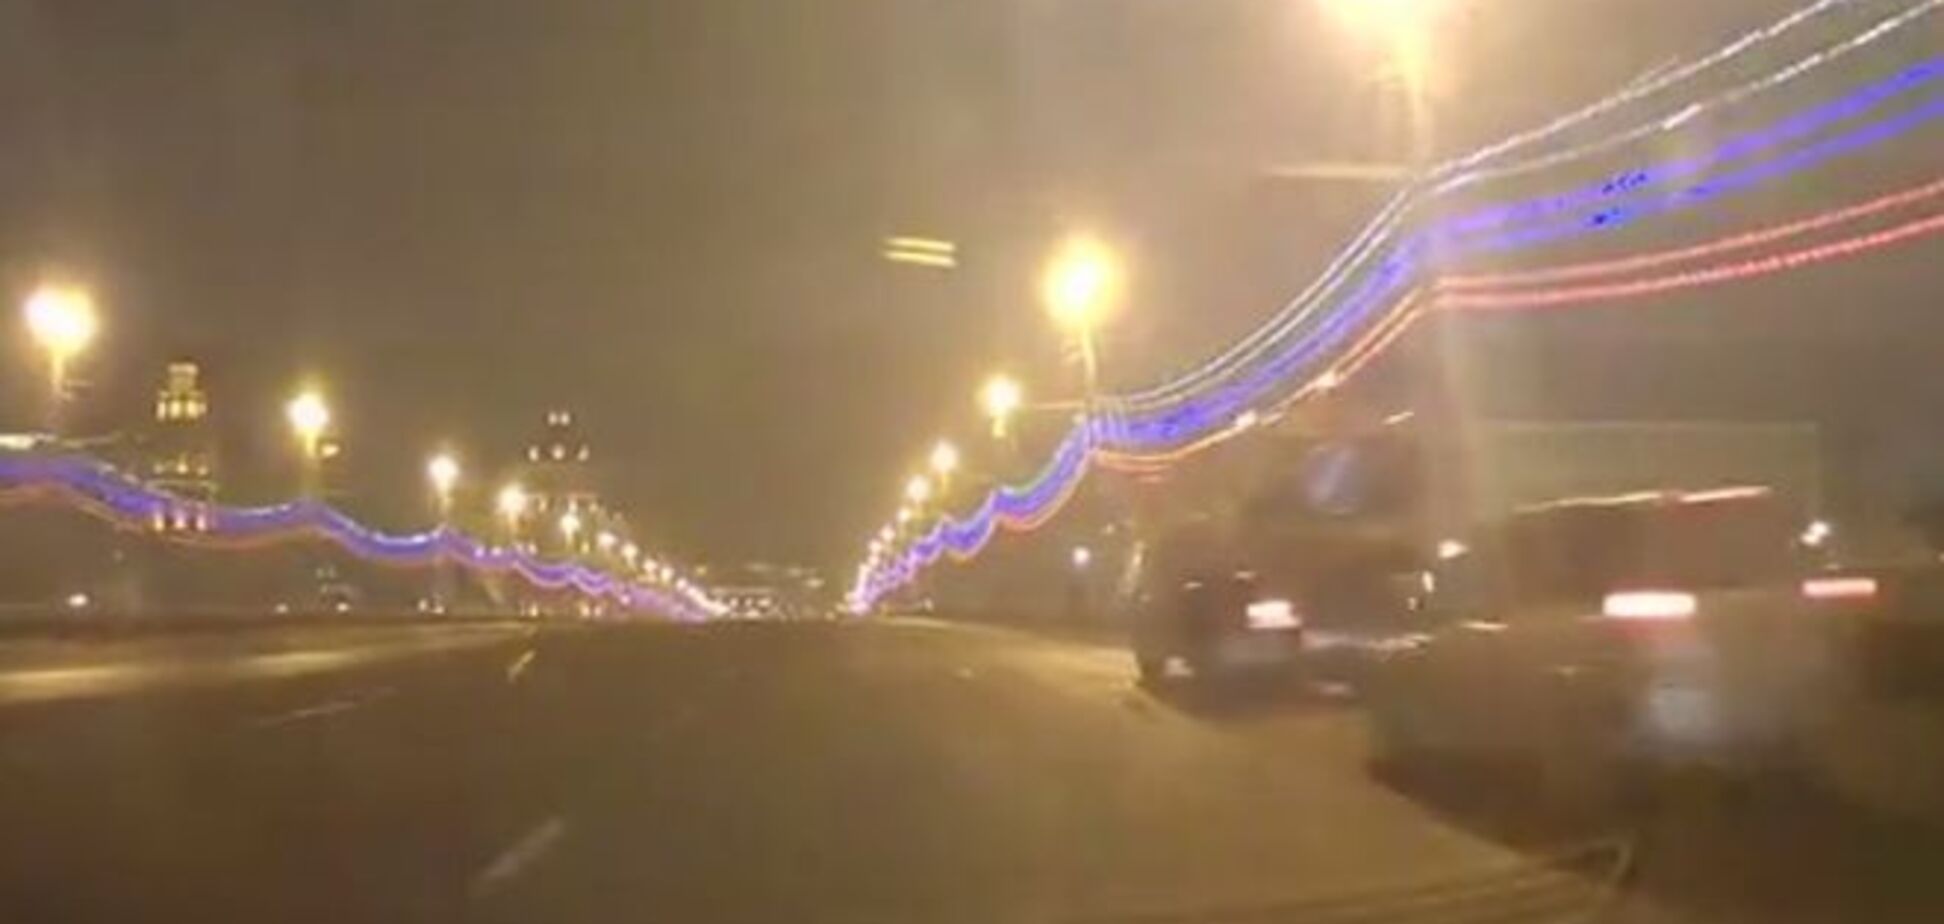 Обнародована запись видеорегистратора автомобиля, проехавшего по мосту через 3 минуты после убийства Немцова